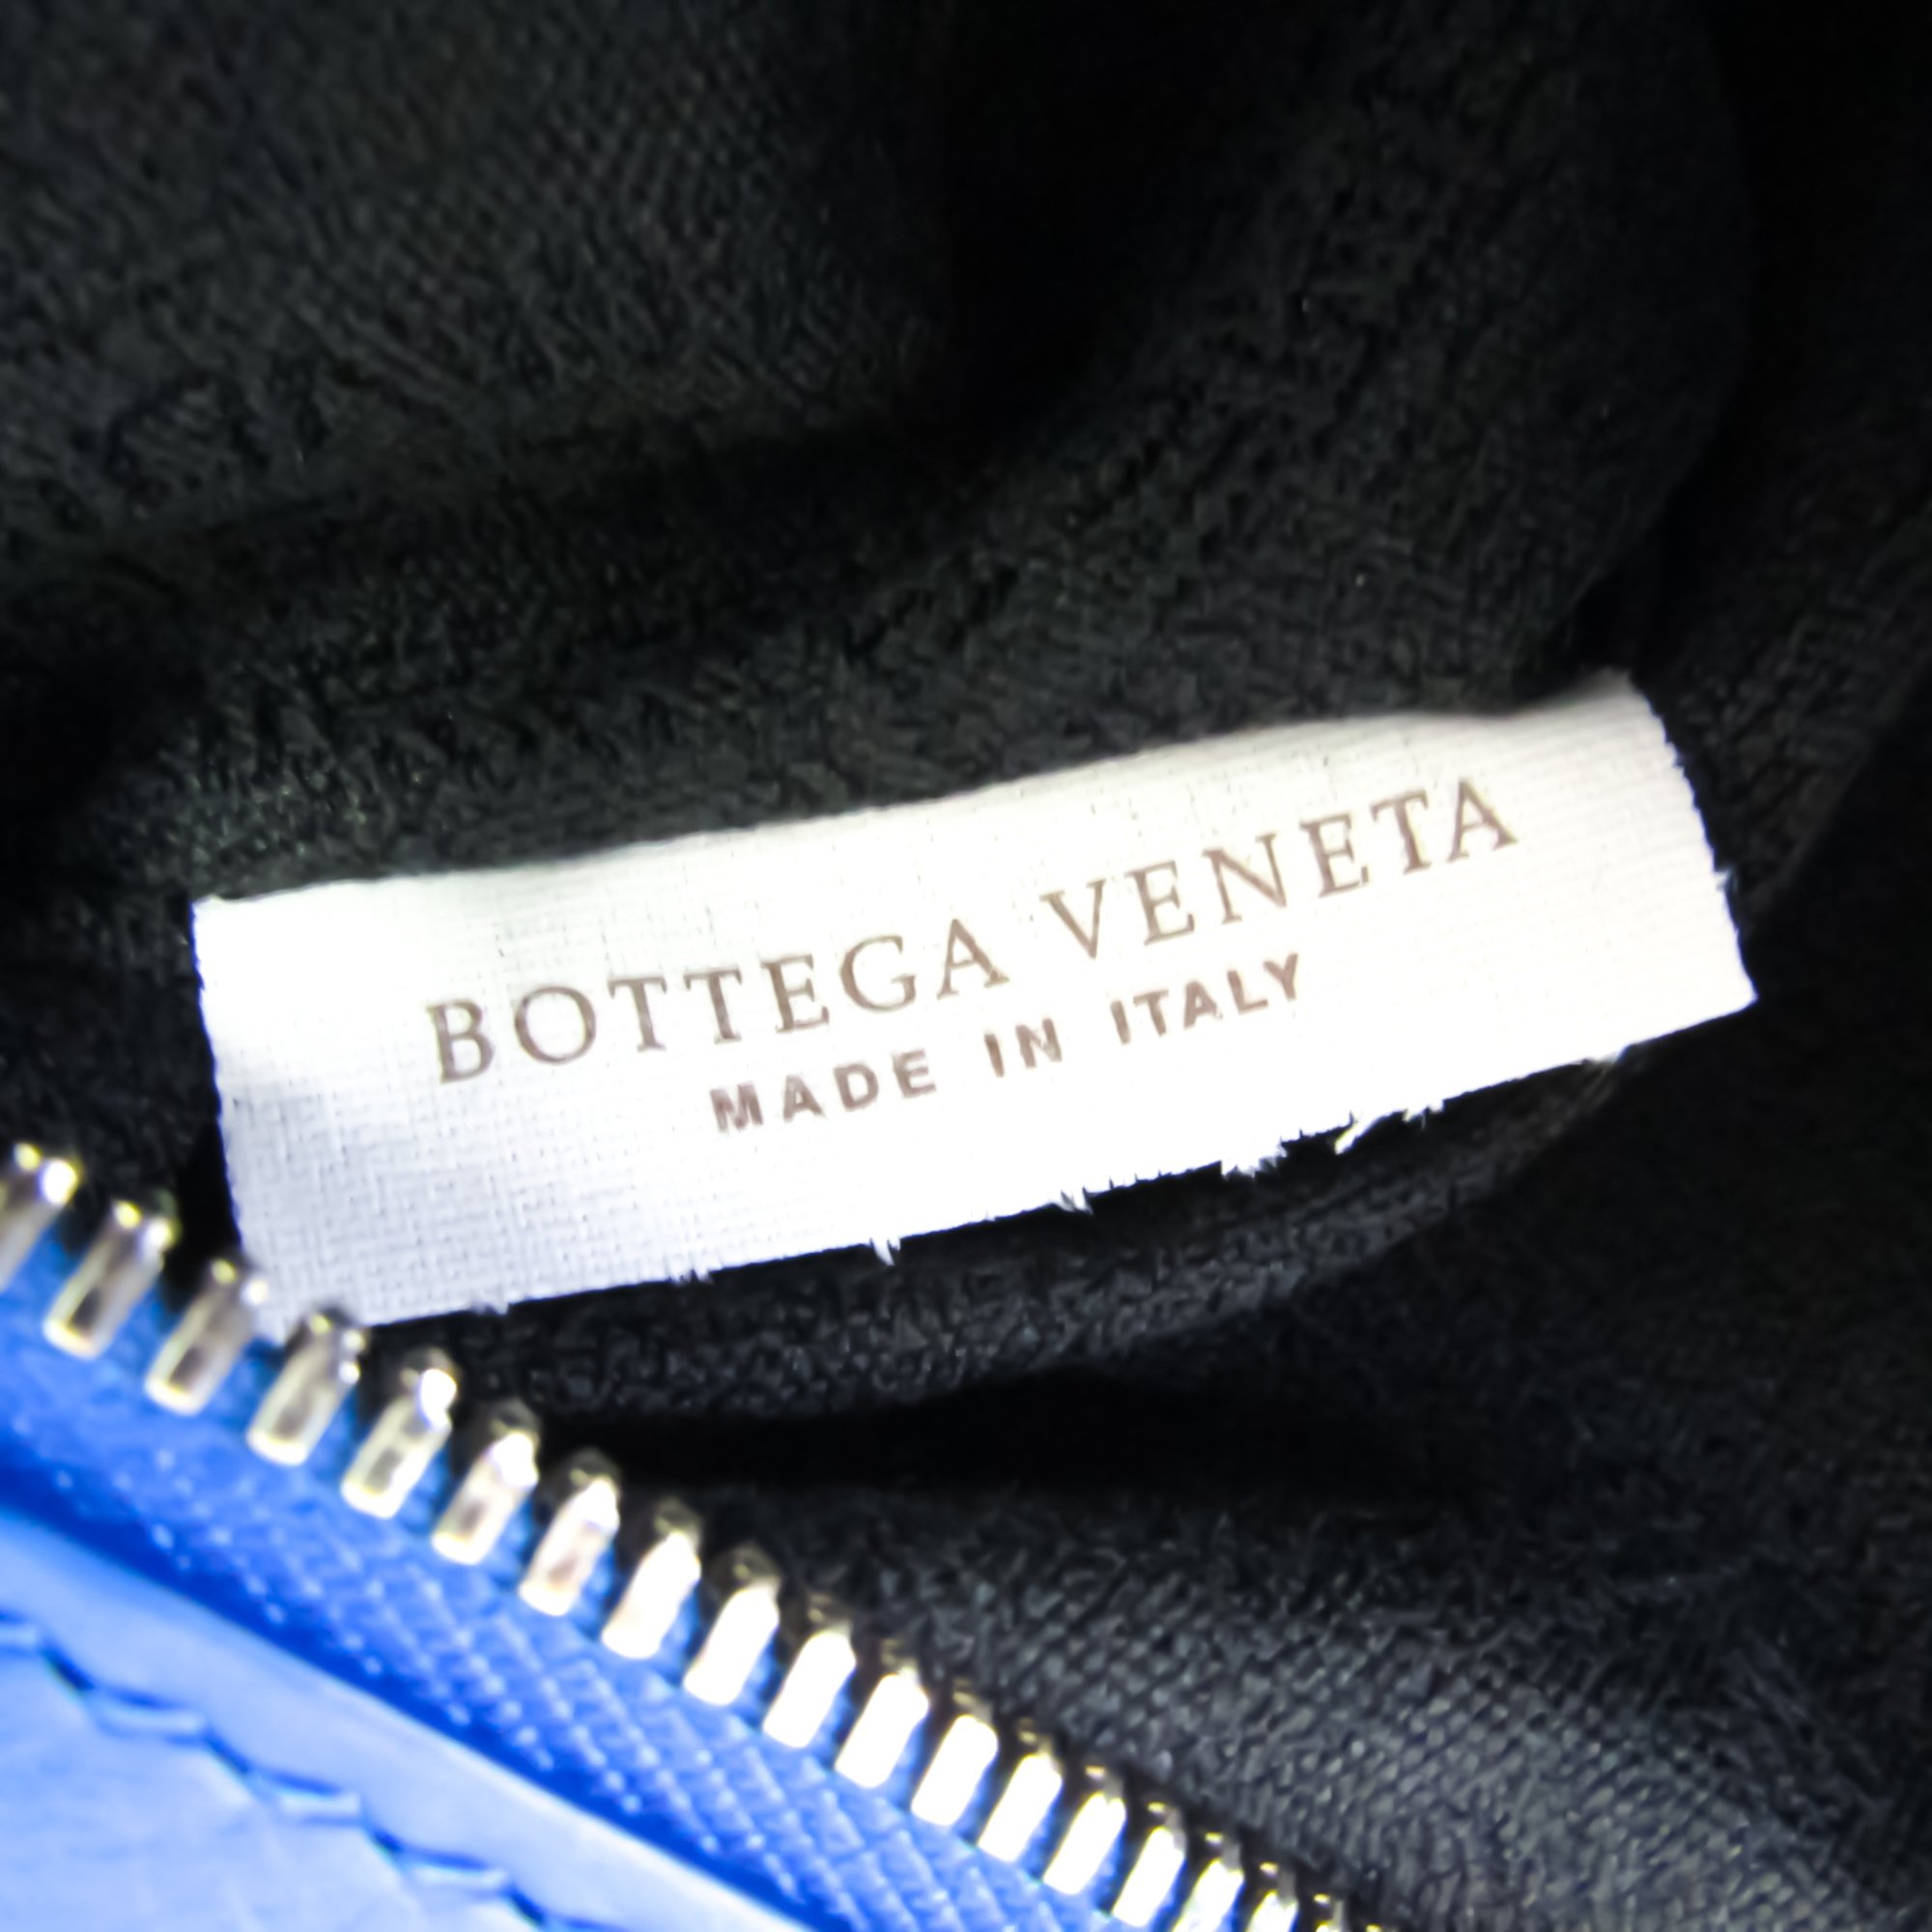 ボッテガ・ヴェネタ(Bottega Veneta) ユニセックス レザー ショルダーバッグ ブルー